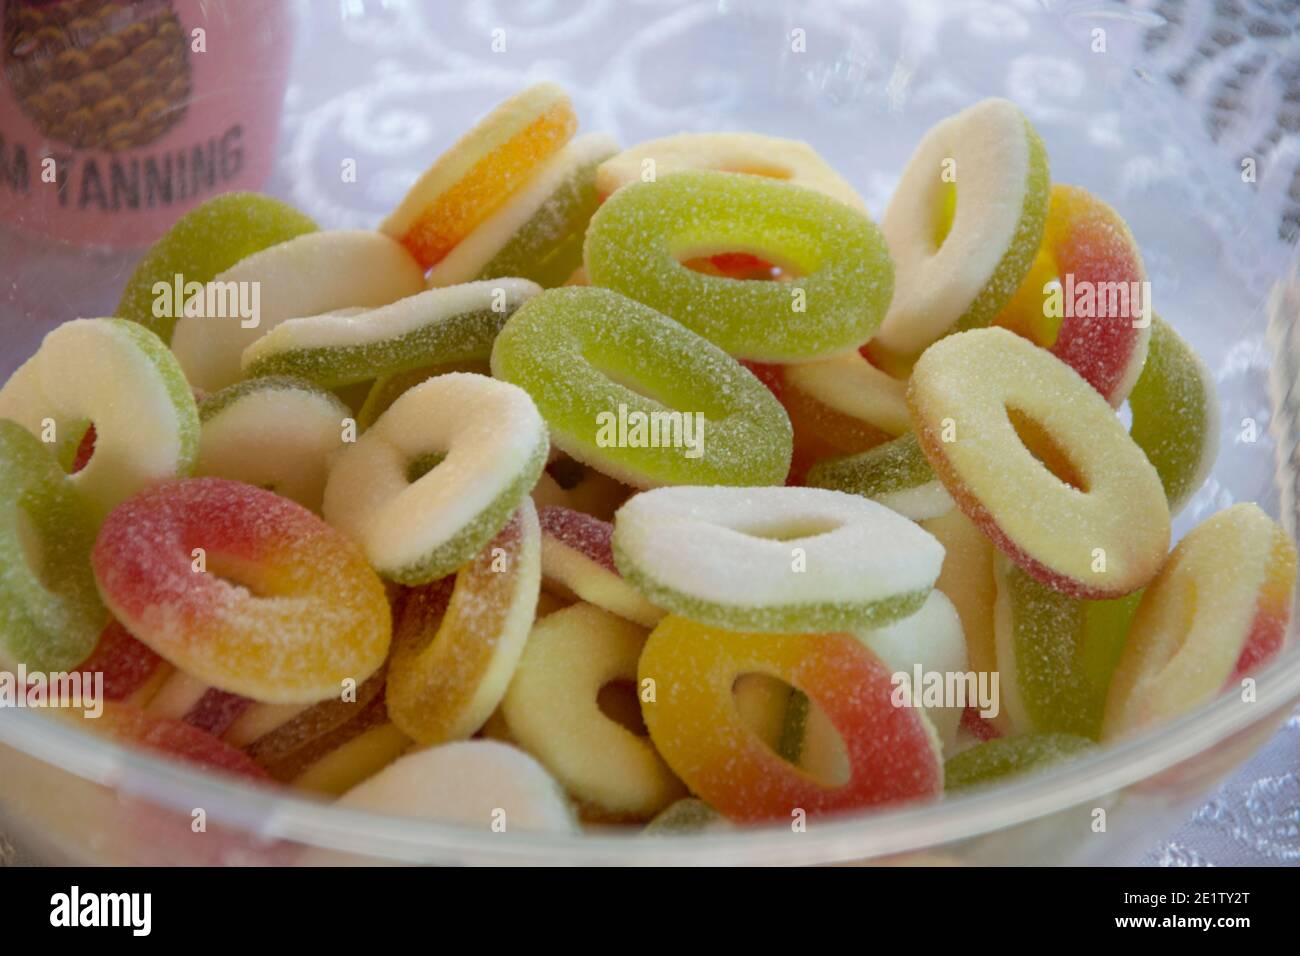 Caramelle gommose, caramelle multicolore per feste per bambini